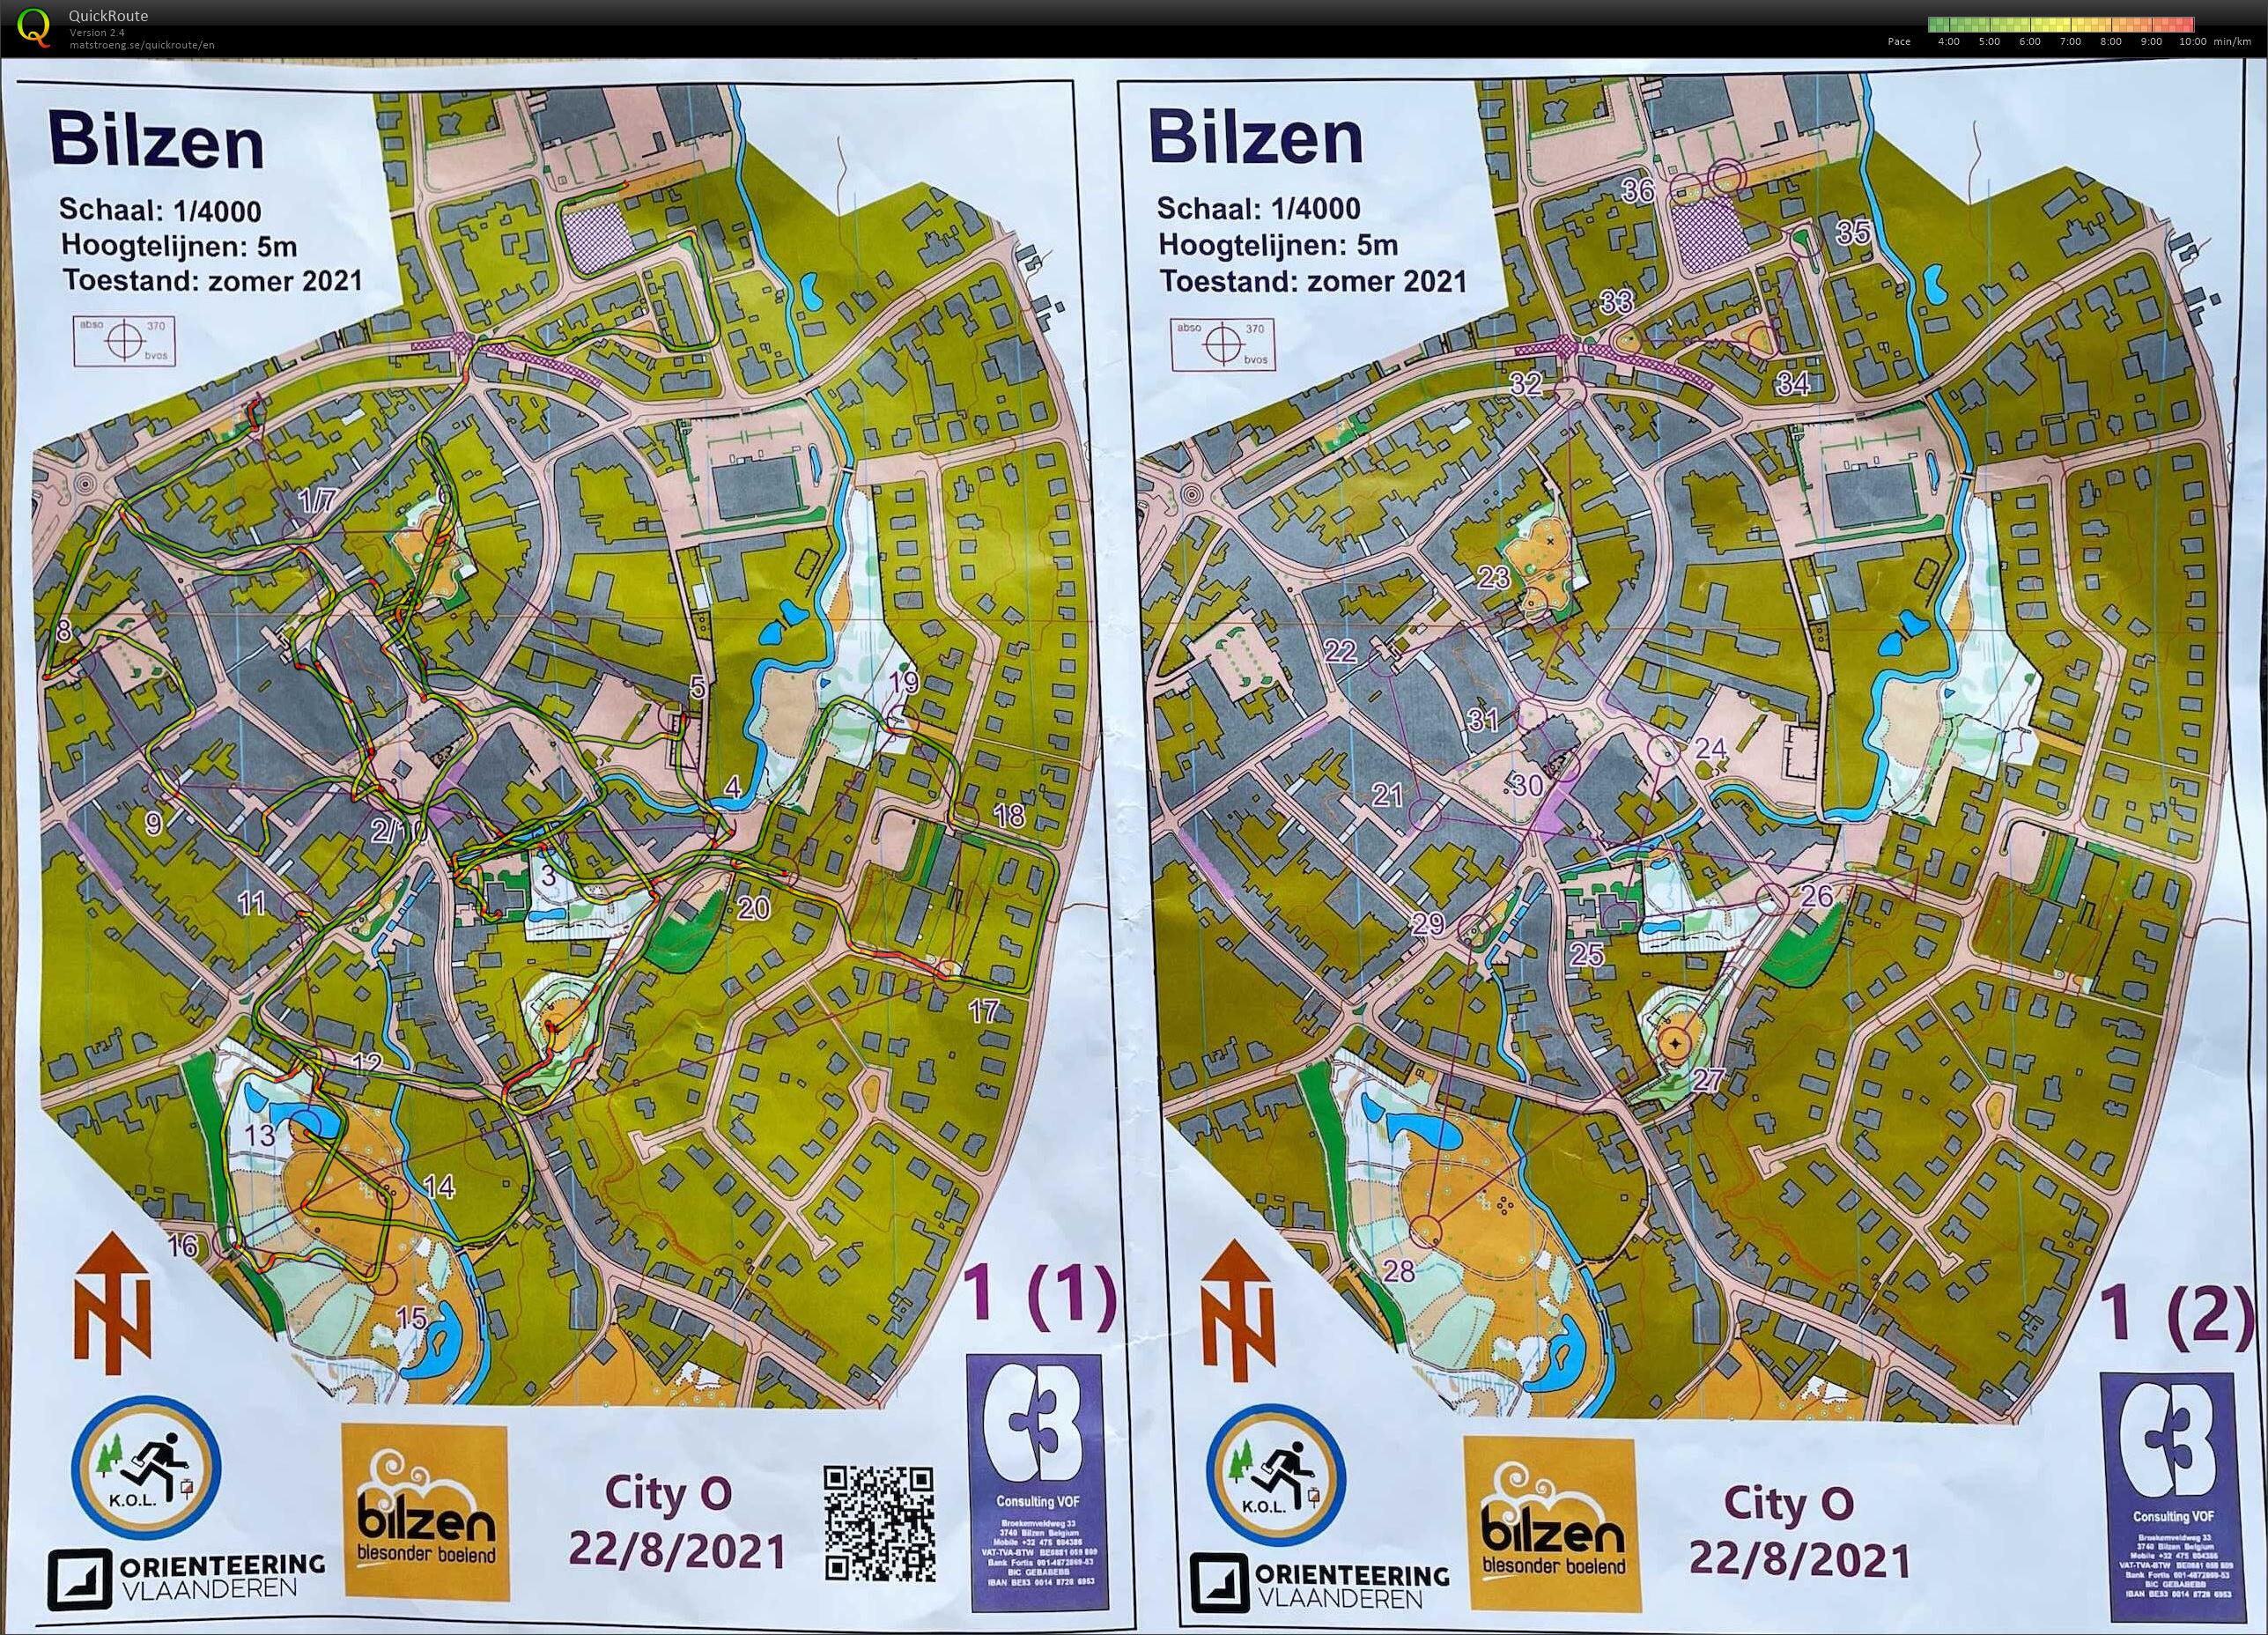 City-O Bilzen (22-08-2021)